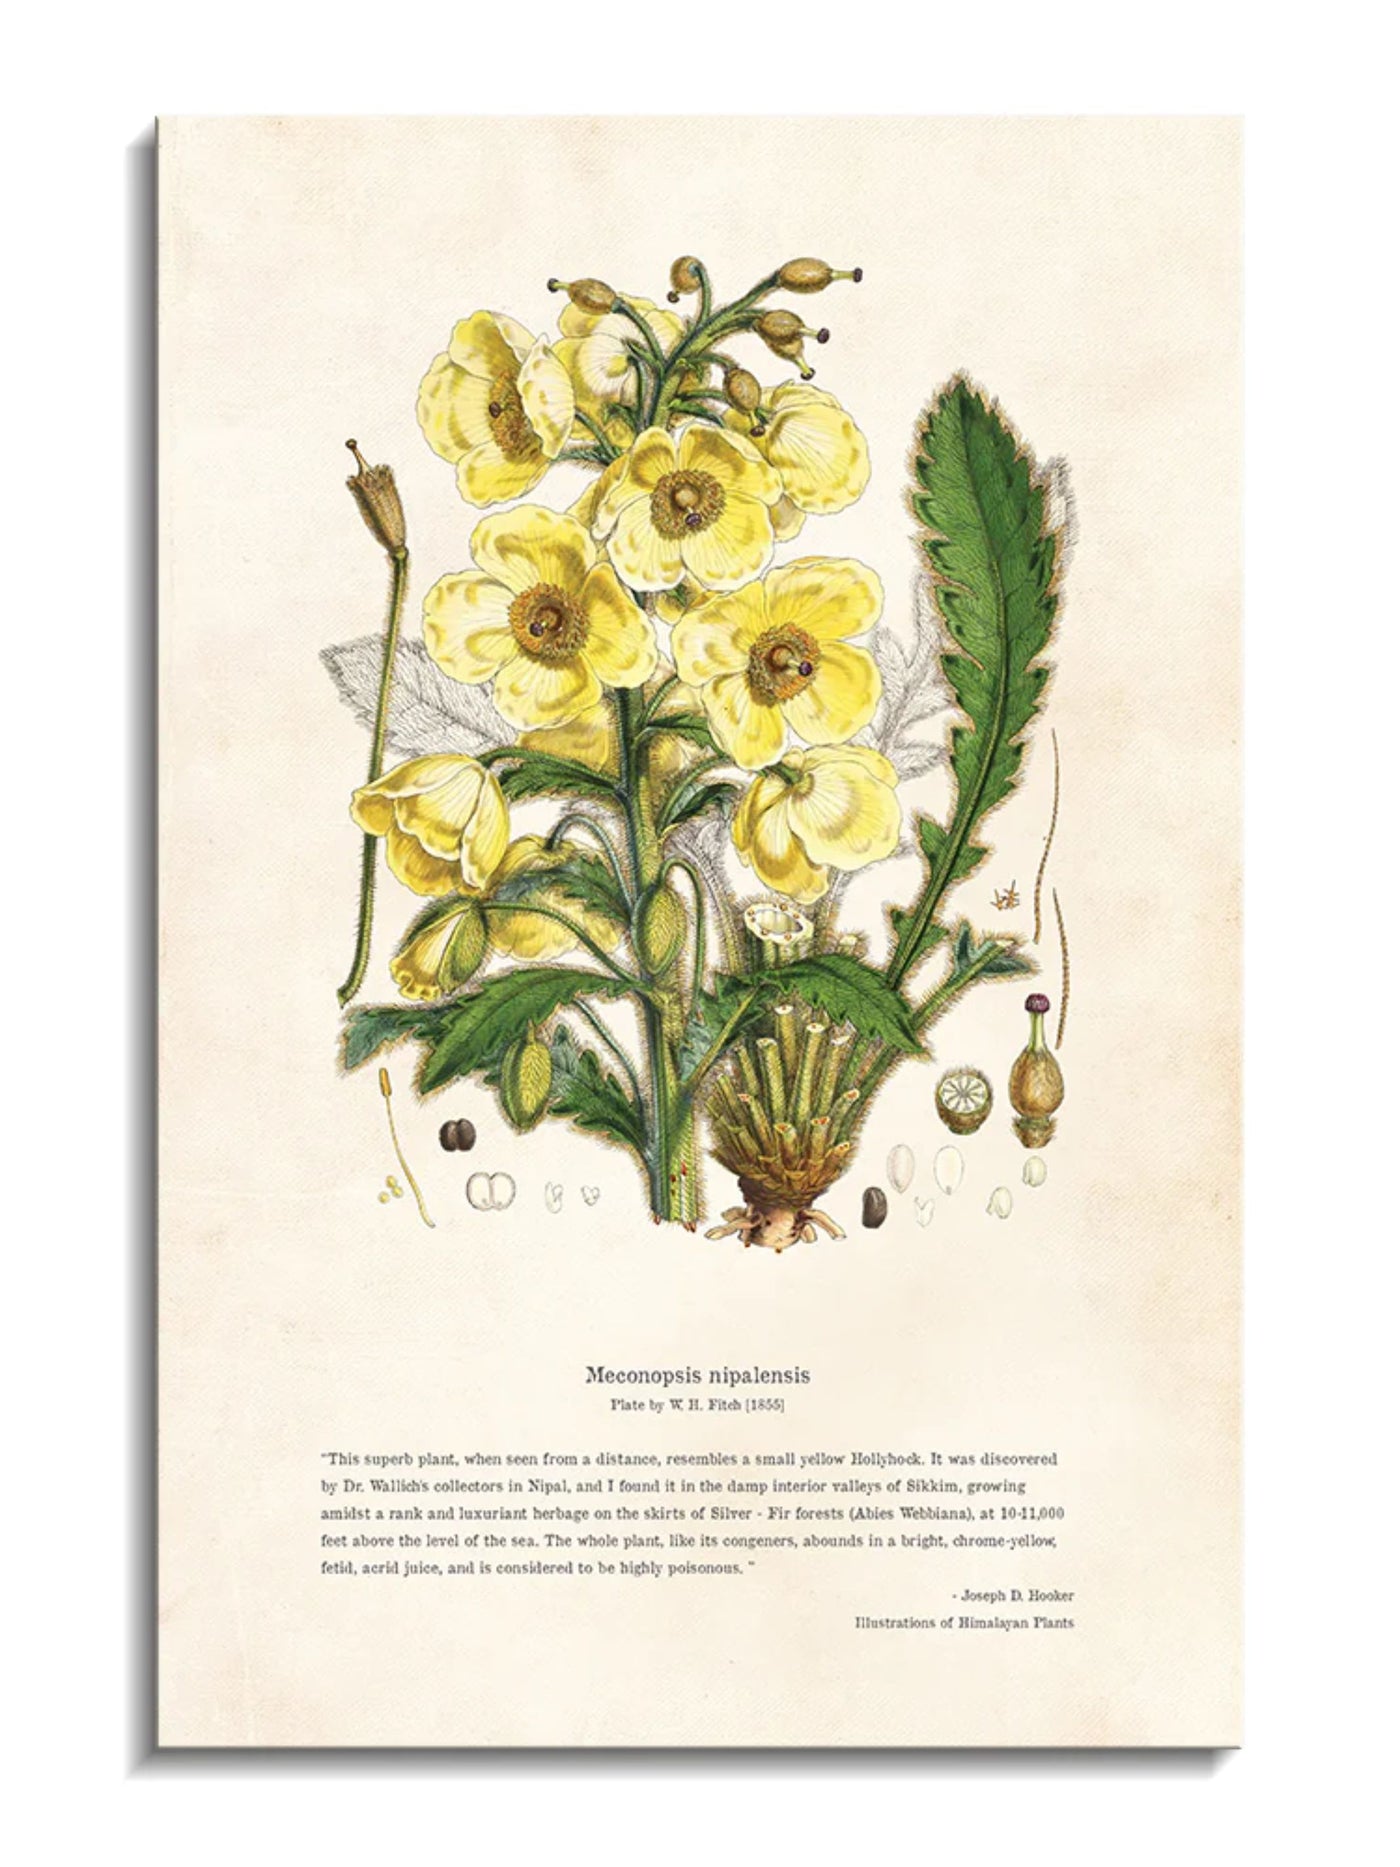 Himalayan Plants - Meconopsis nipalensis